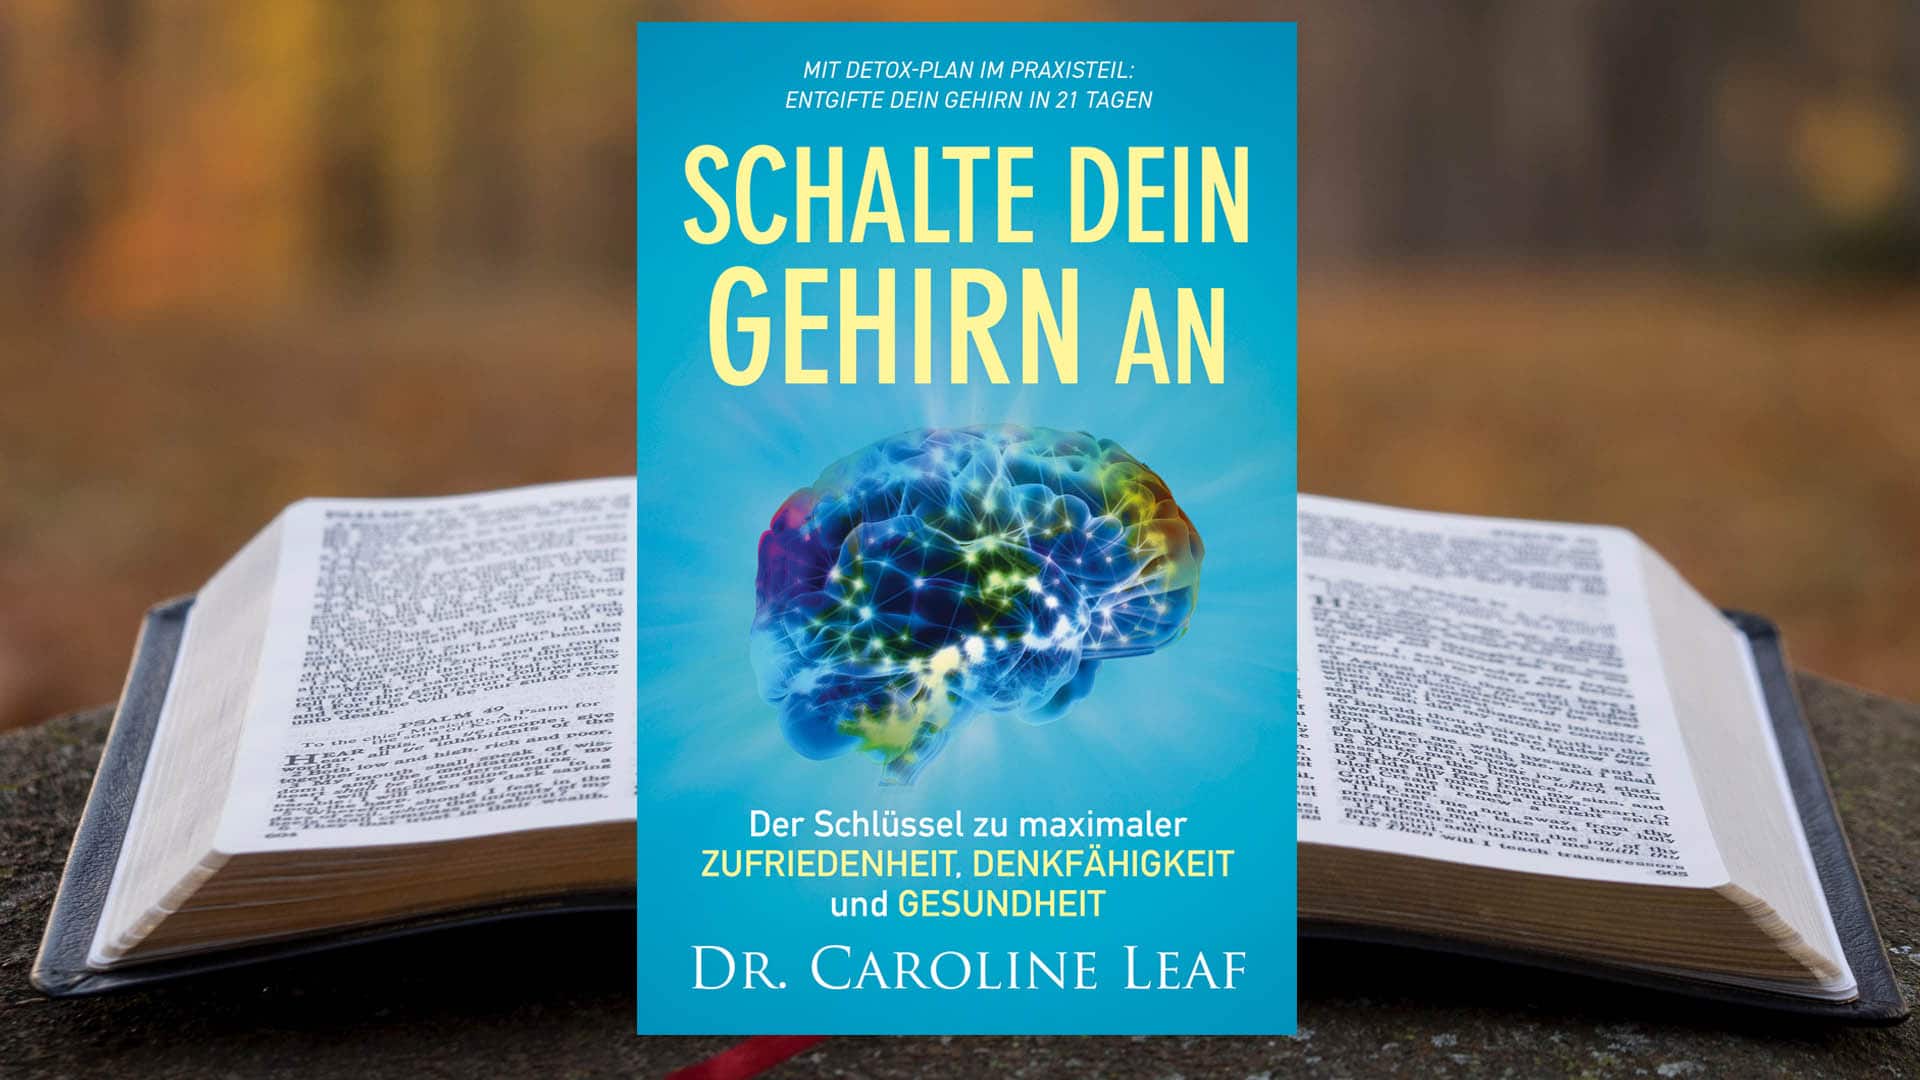 Das Buch „Schalte dein Gehirn an“ ist ein ungewöhnlicher Blick auf die Verbindung von Neurowissenschaft und Bibel